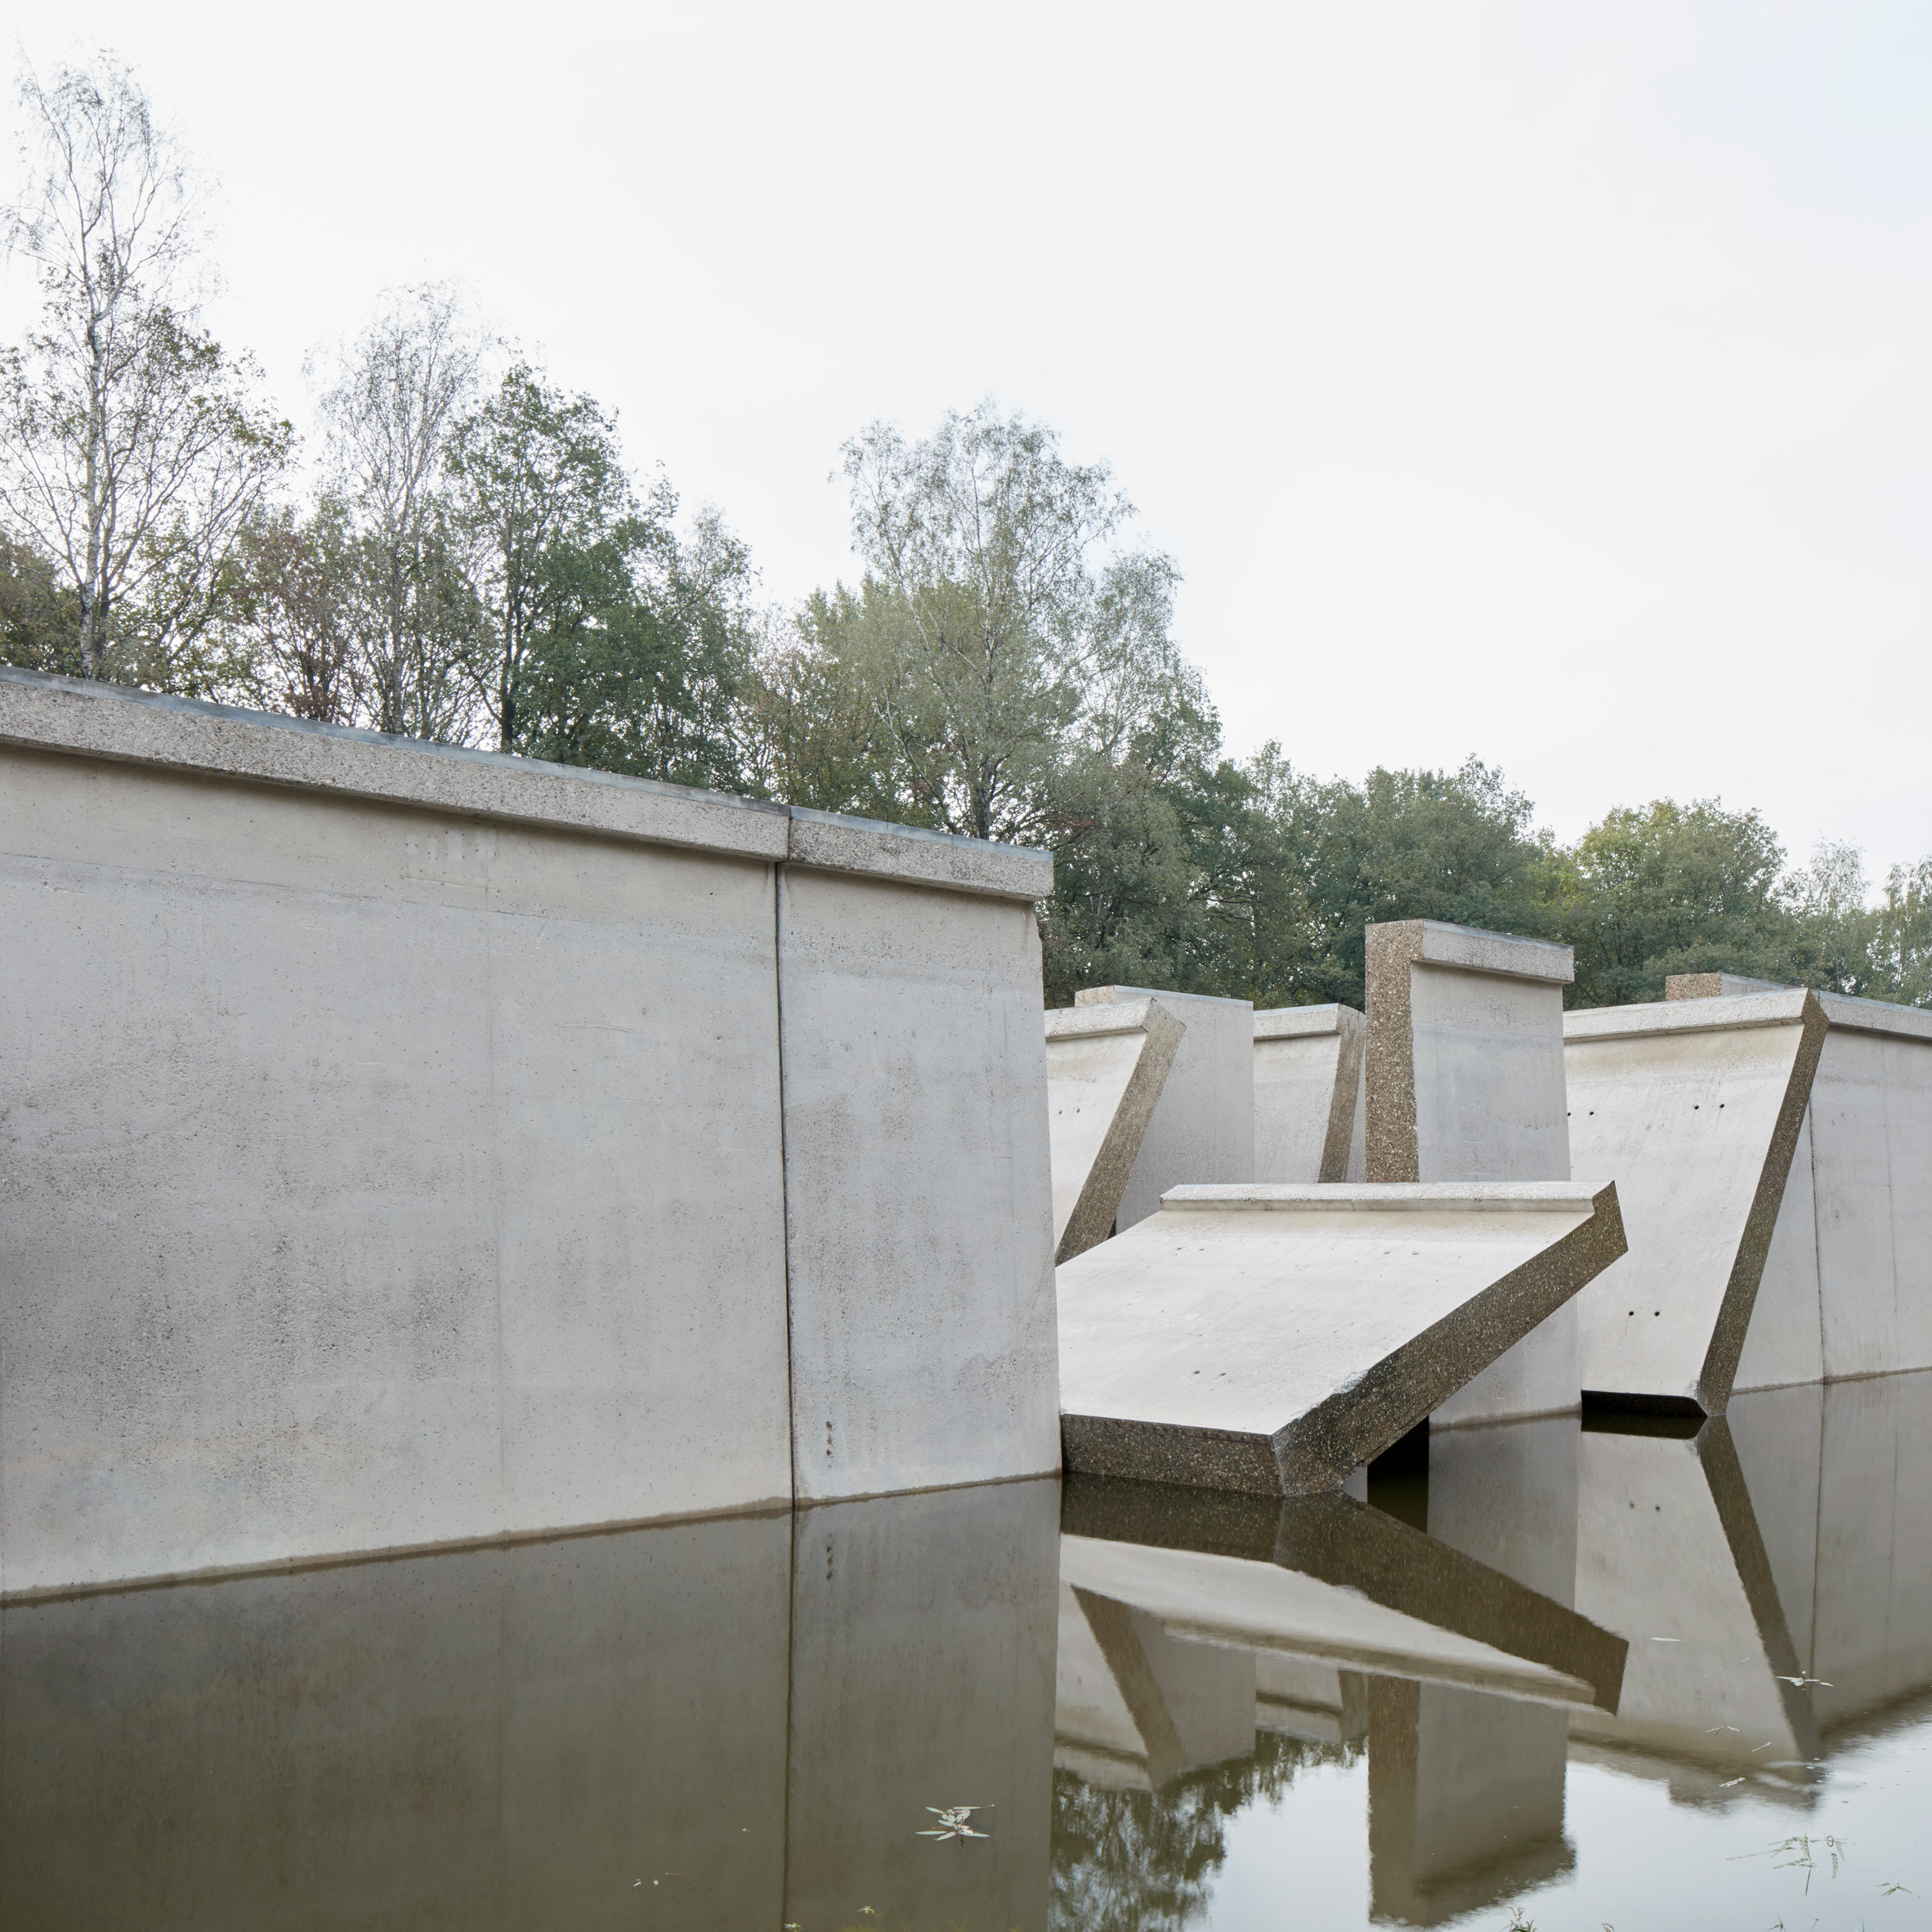 Dezeen's top 10 installations of 2018: Deltawerk, Netherlands, by RAAAF and Atelier de Lyon